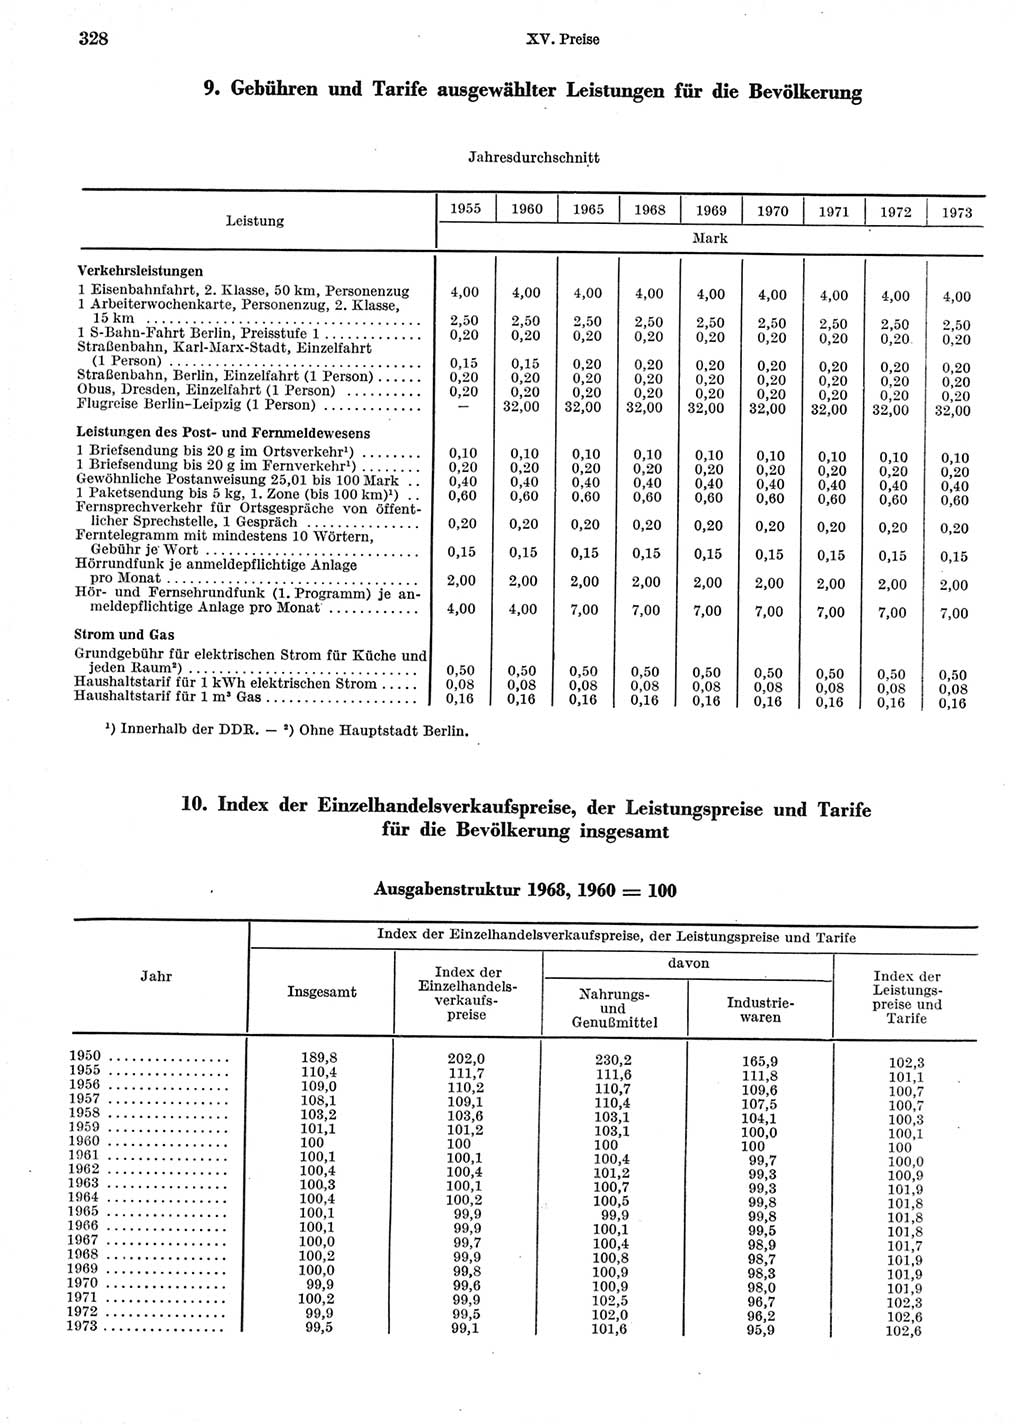 Statistisches Jahrbuch der Deutschen Demokratischen Republik (DDR) 1974, Seite 328 (Stat. Jb. DDR 1974, S. 328)